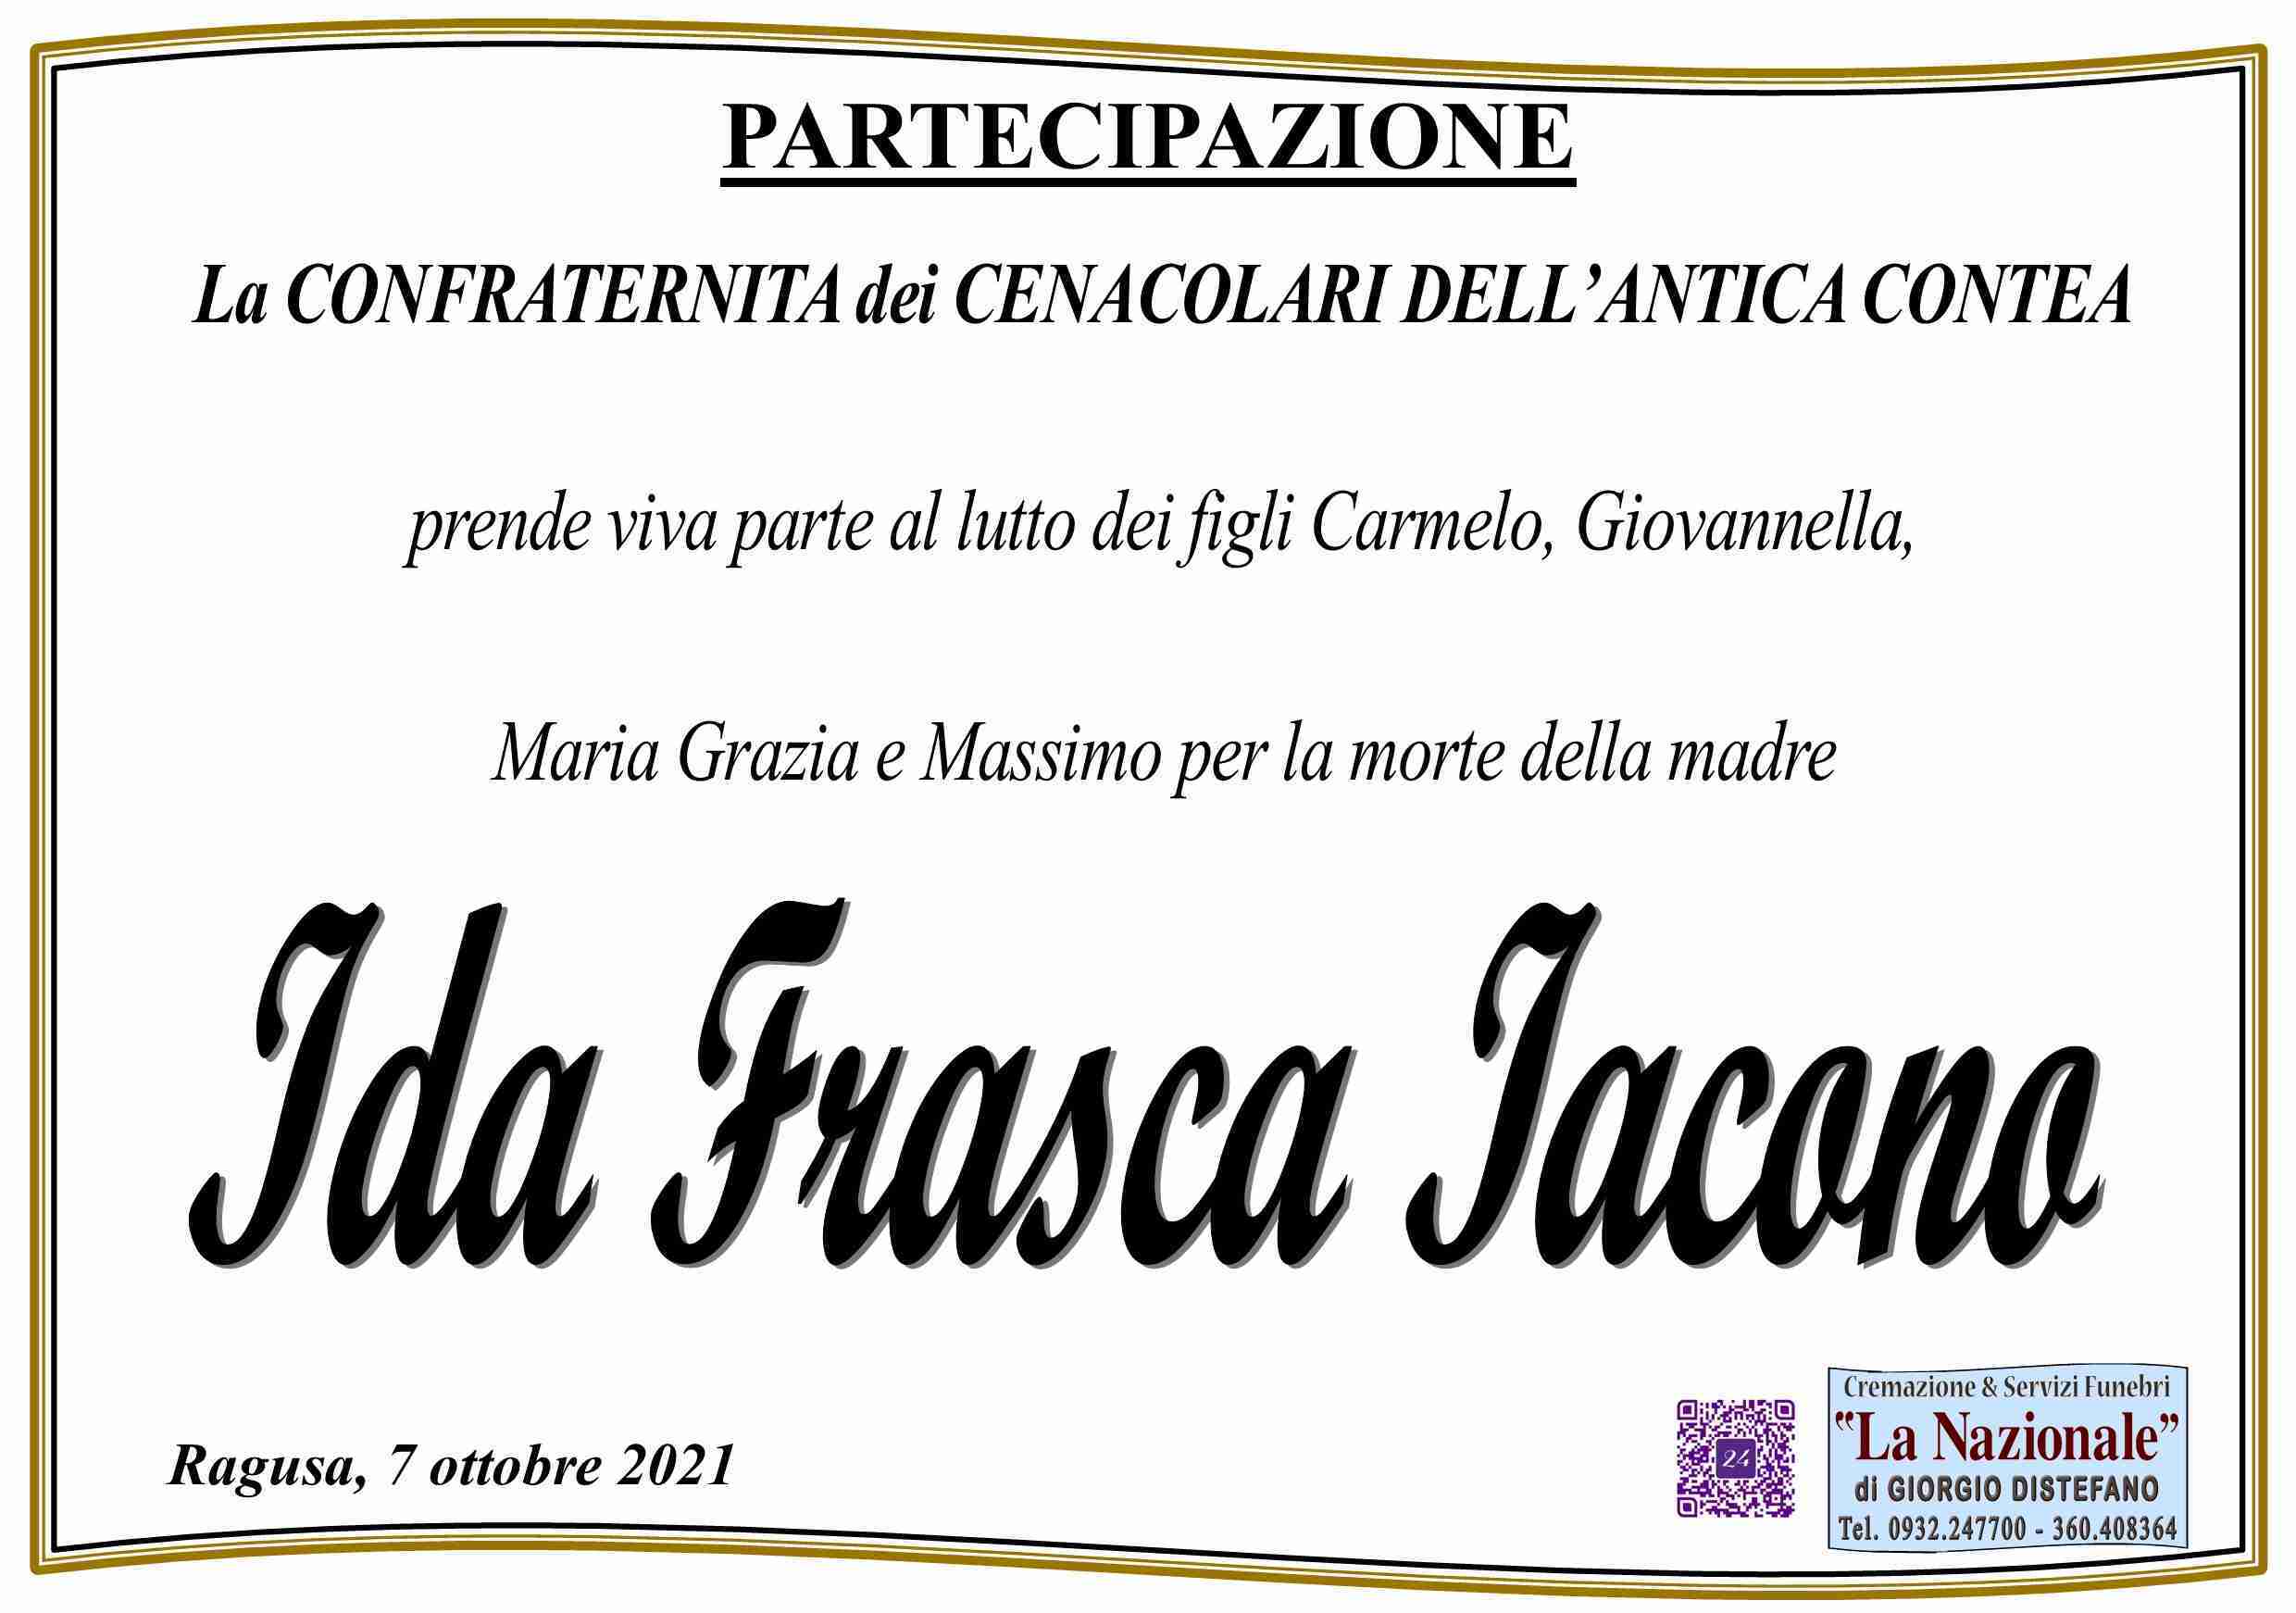 Ida Frasca Iacono